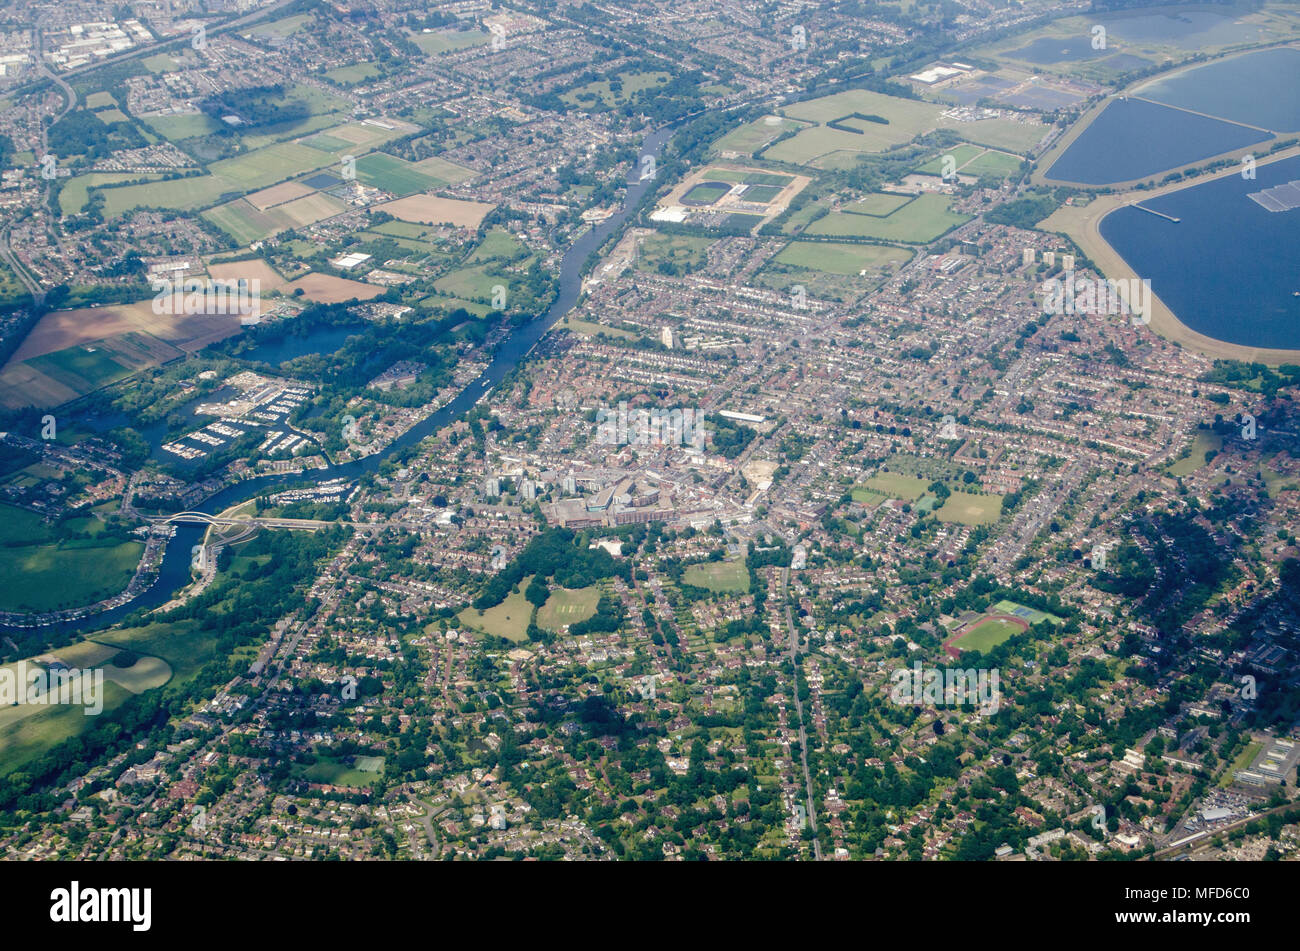 Vue aérienne de la ville de Riverside Walton-on-Thames, dans le Surrey borough d'Elmbridge. La Reine Elizabeth II permet de réservoir stockage provi Banque D'Images